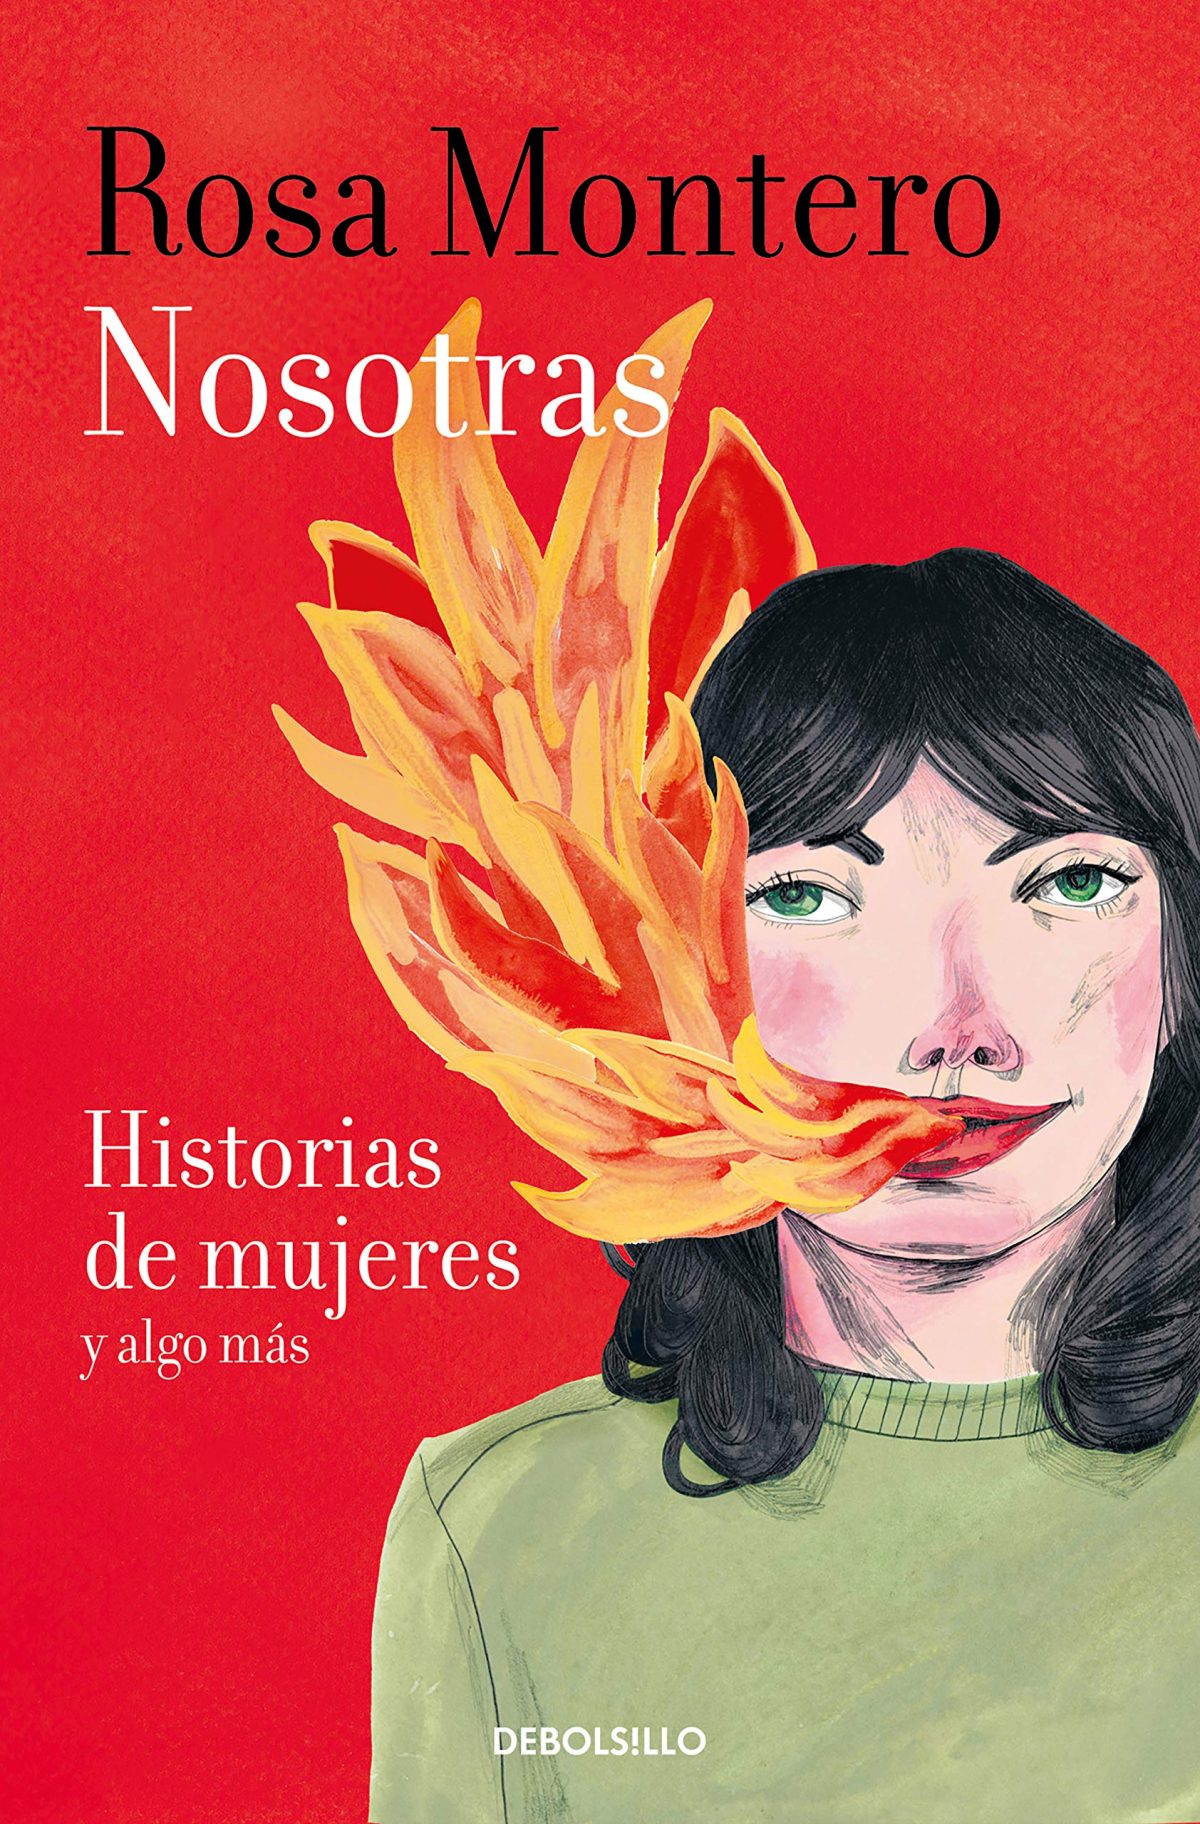 Invitación a la lectura XXVI: Nosotras. Historia de mujeres y algo más, de  Rosa Montero.